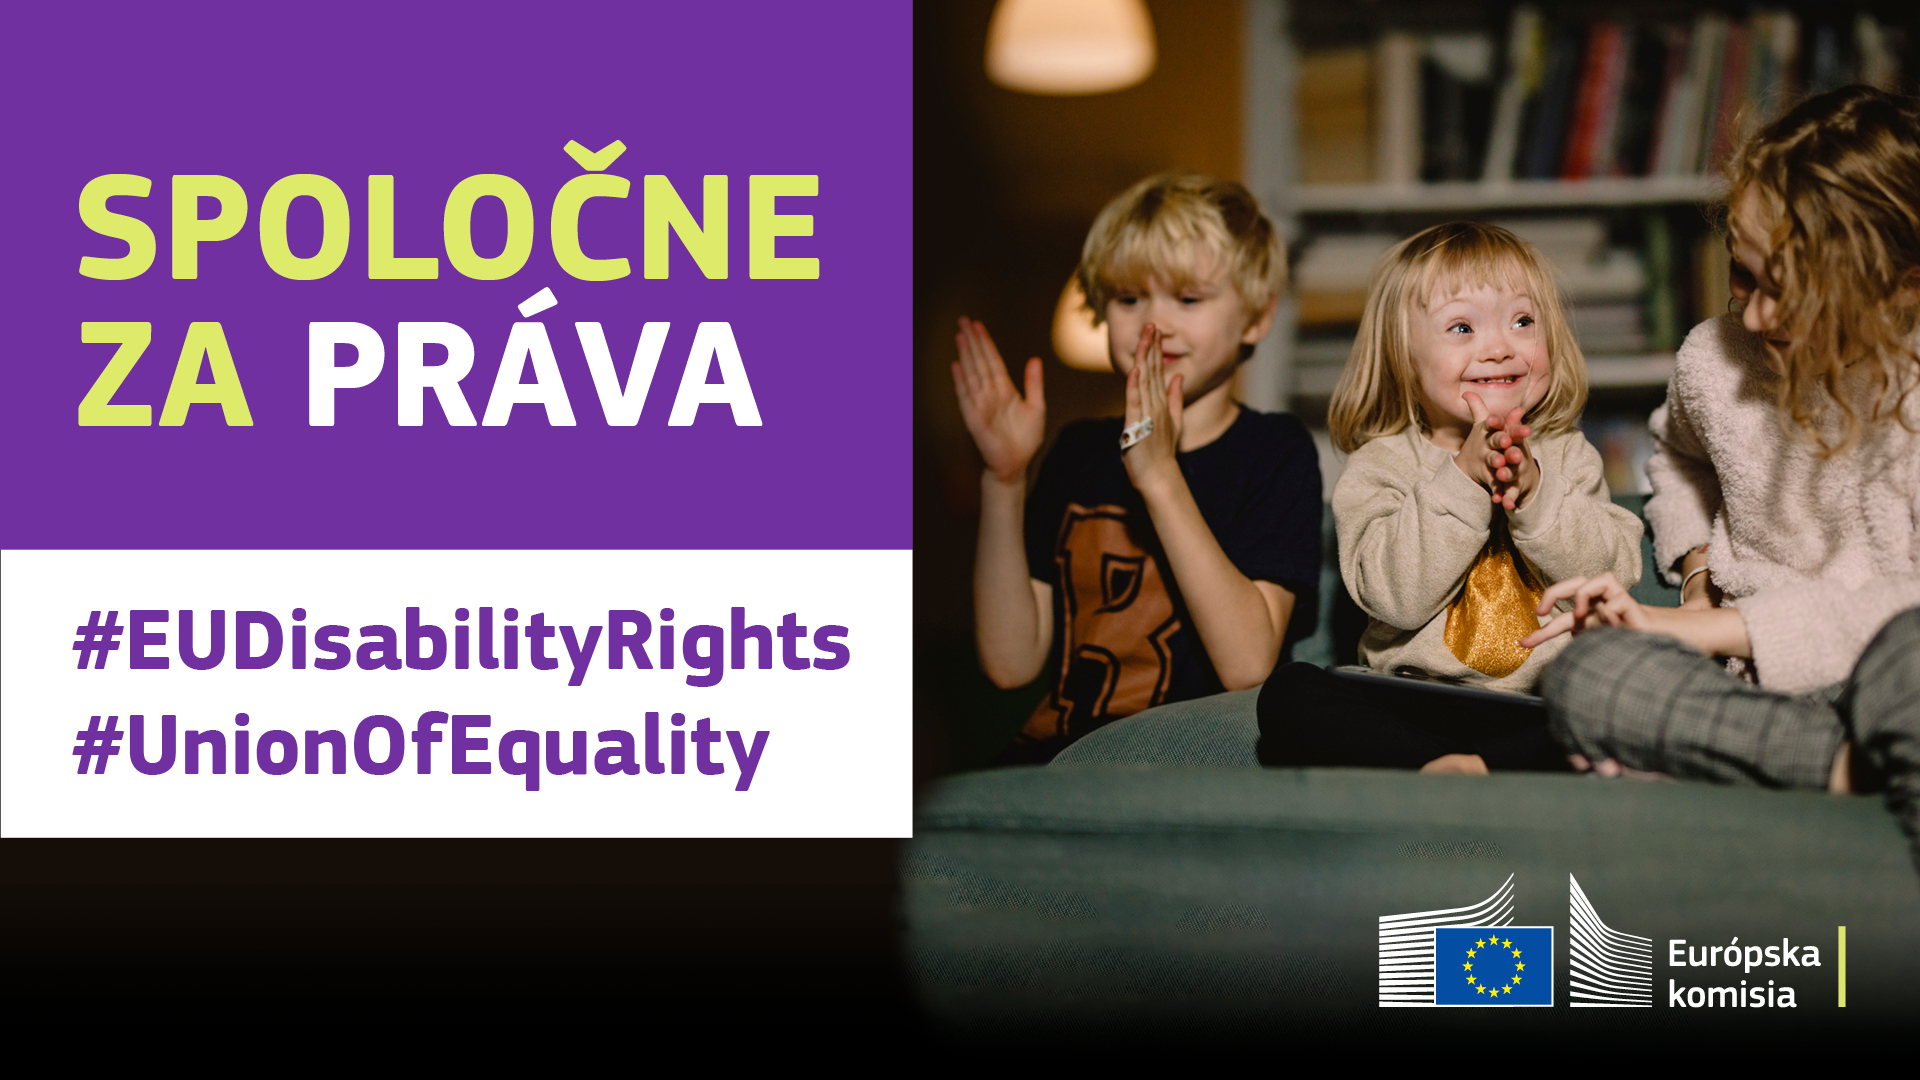 Tri deti sa spolu hrajú. Jedno z nich má Downov syndróm. Text znie: spoločne za práva, #EUDisabilityRights, #UnionOfEquality.